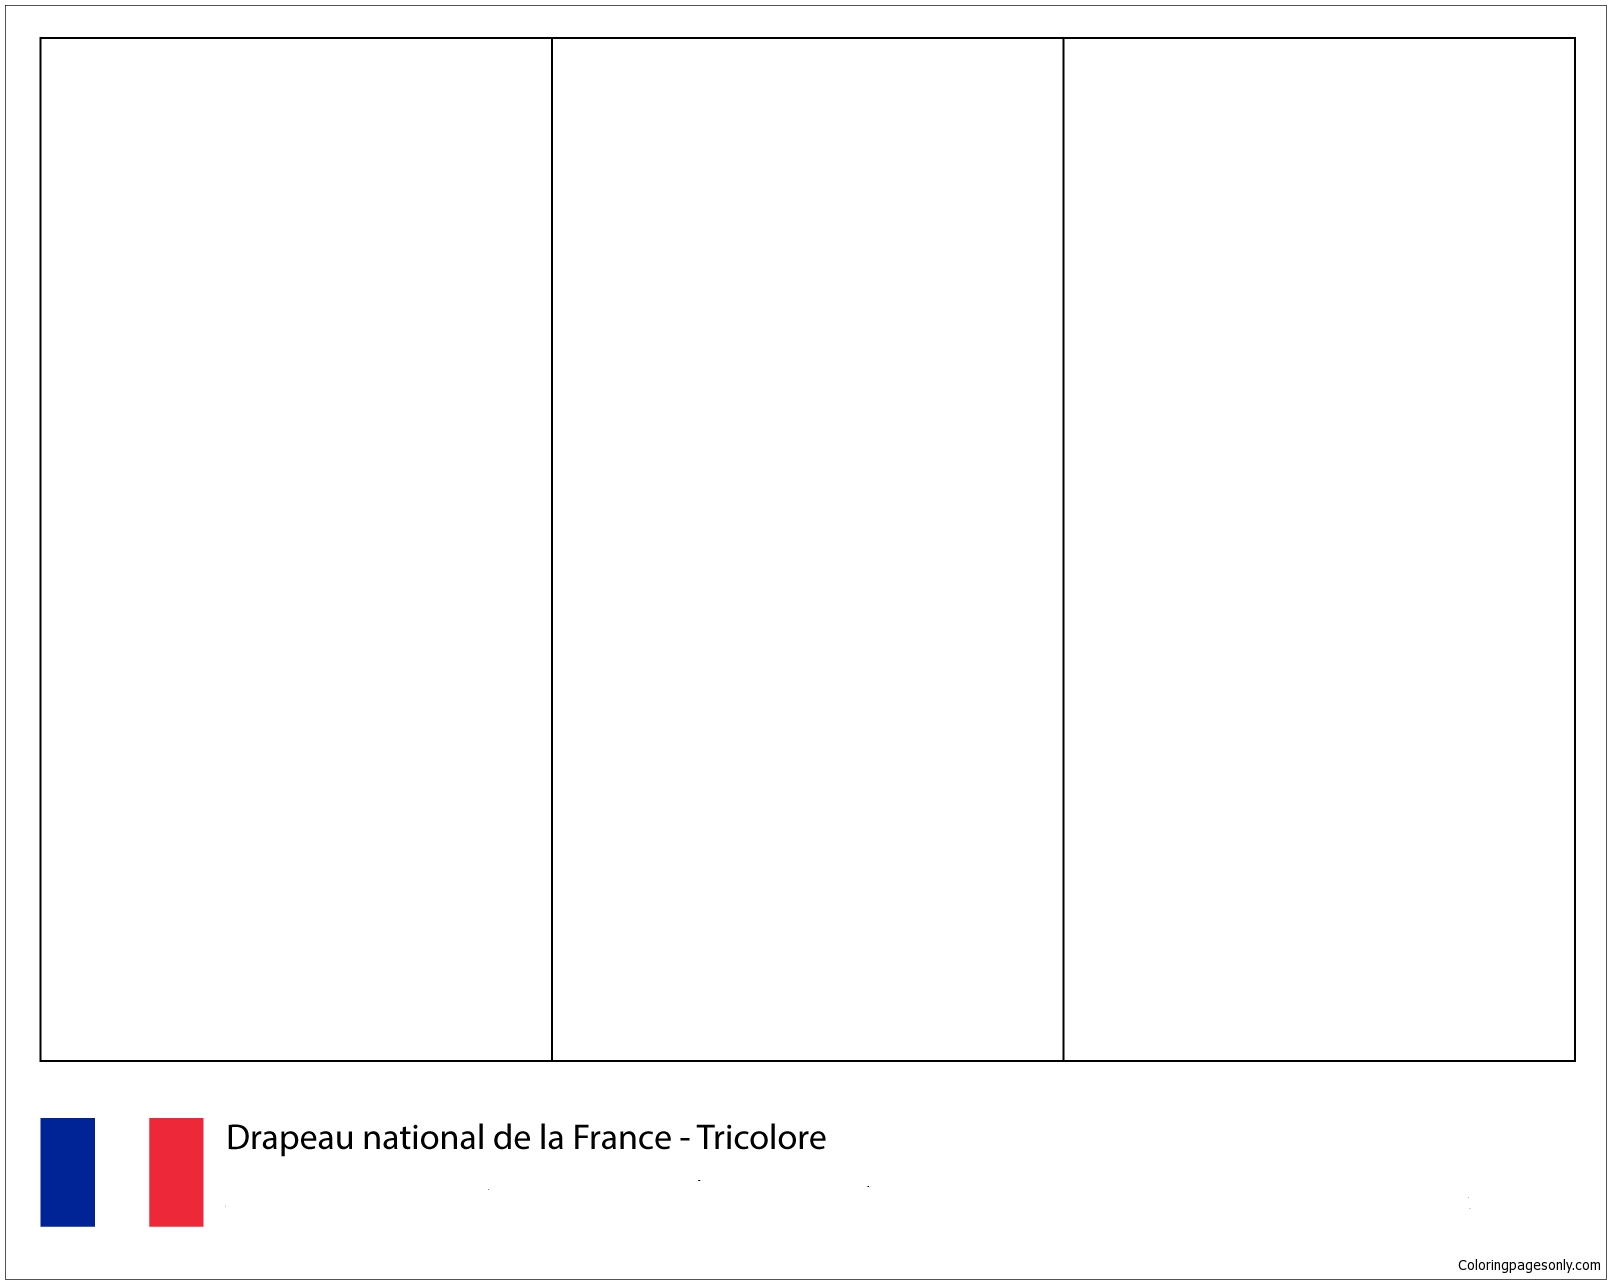 Flagge von Frankreich-Weltmeisterschaft 2018 aus den Flaggen der Weltmeisterschaft 2018